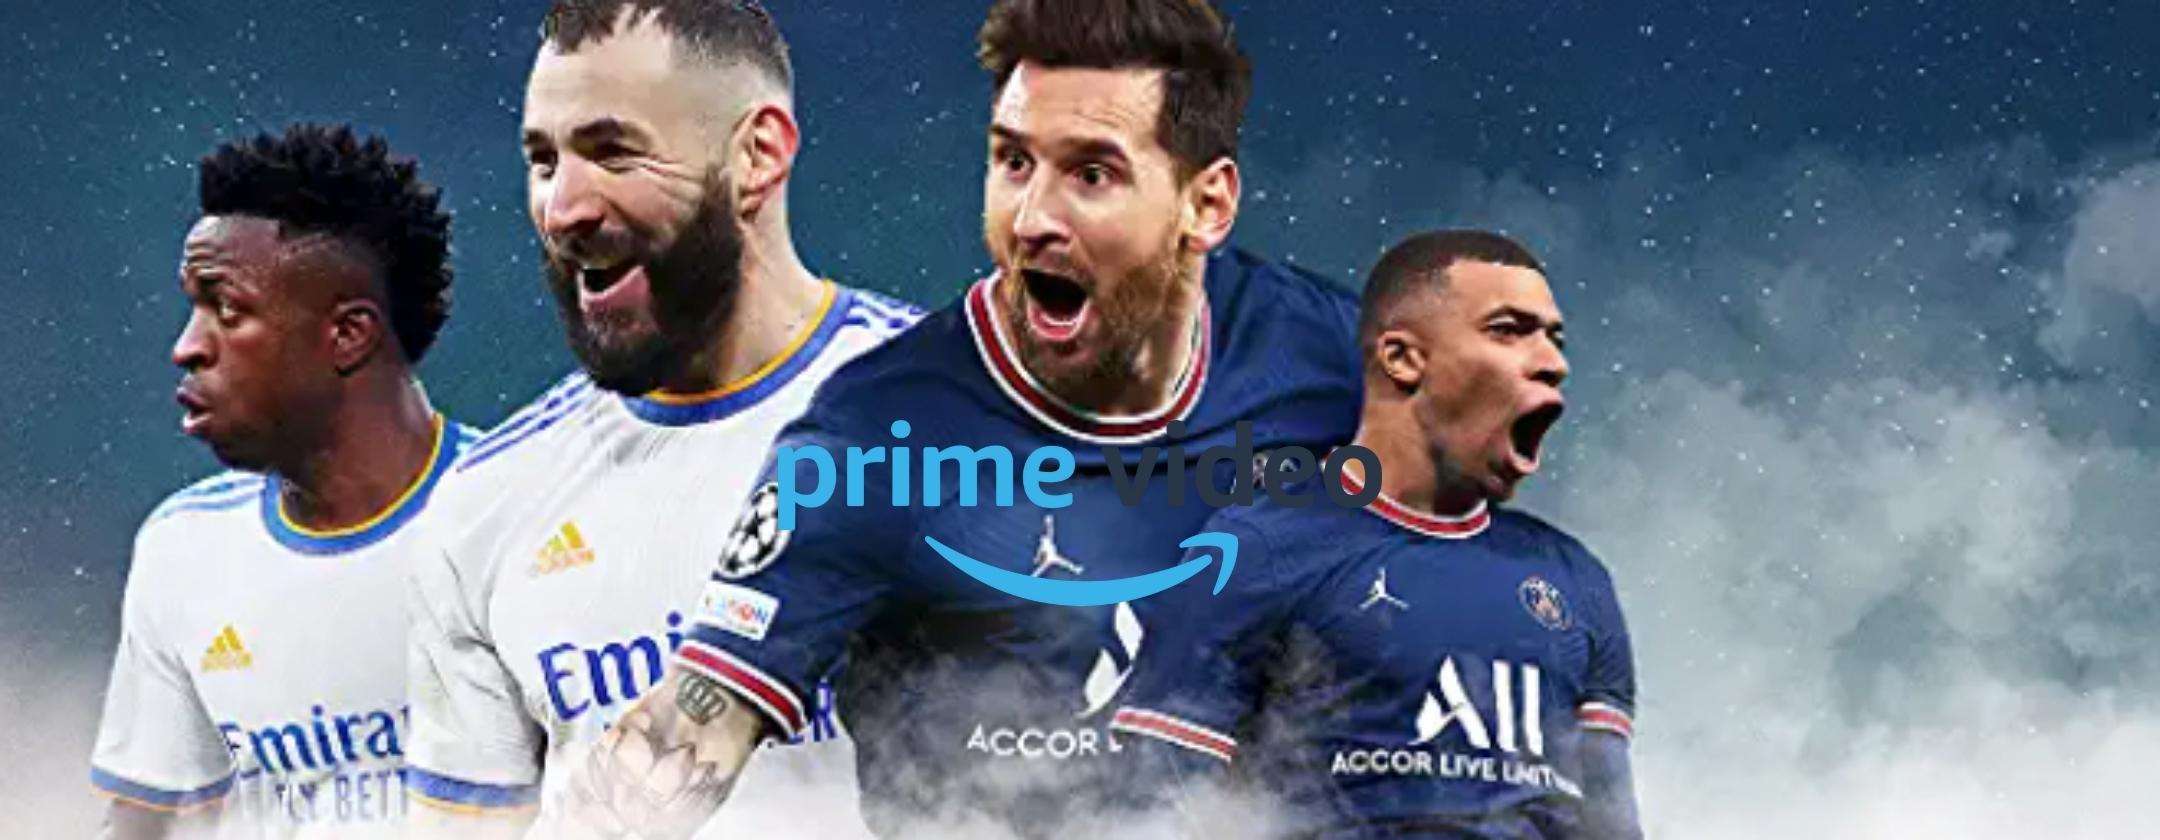 Amazon Prime Video lancia X-Ray anche per la UEFA Champions League